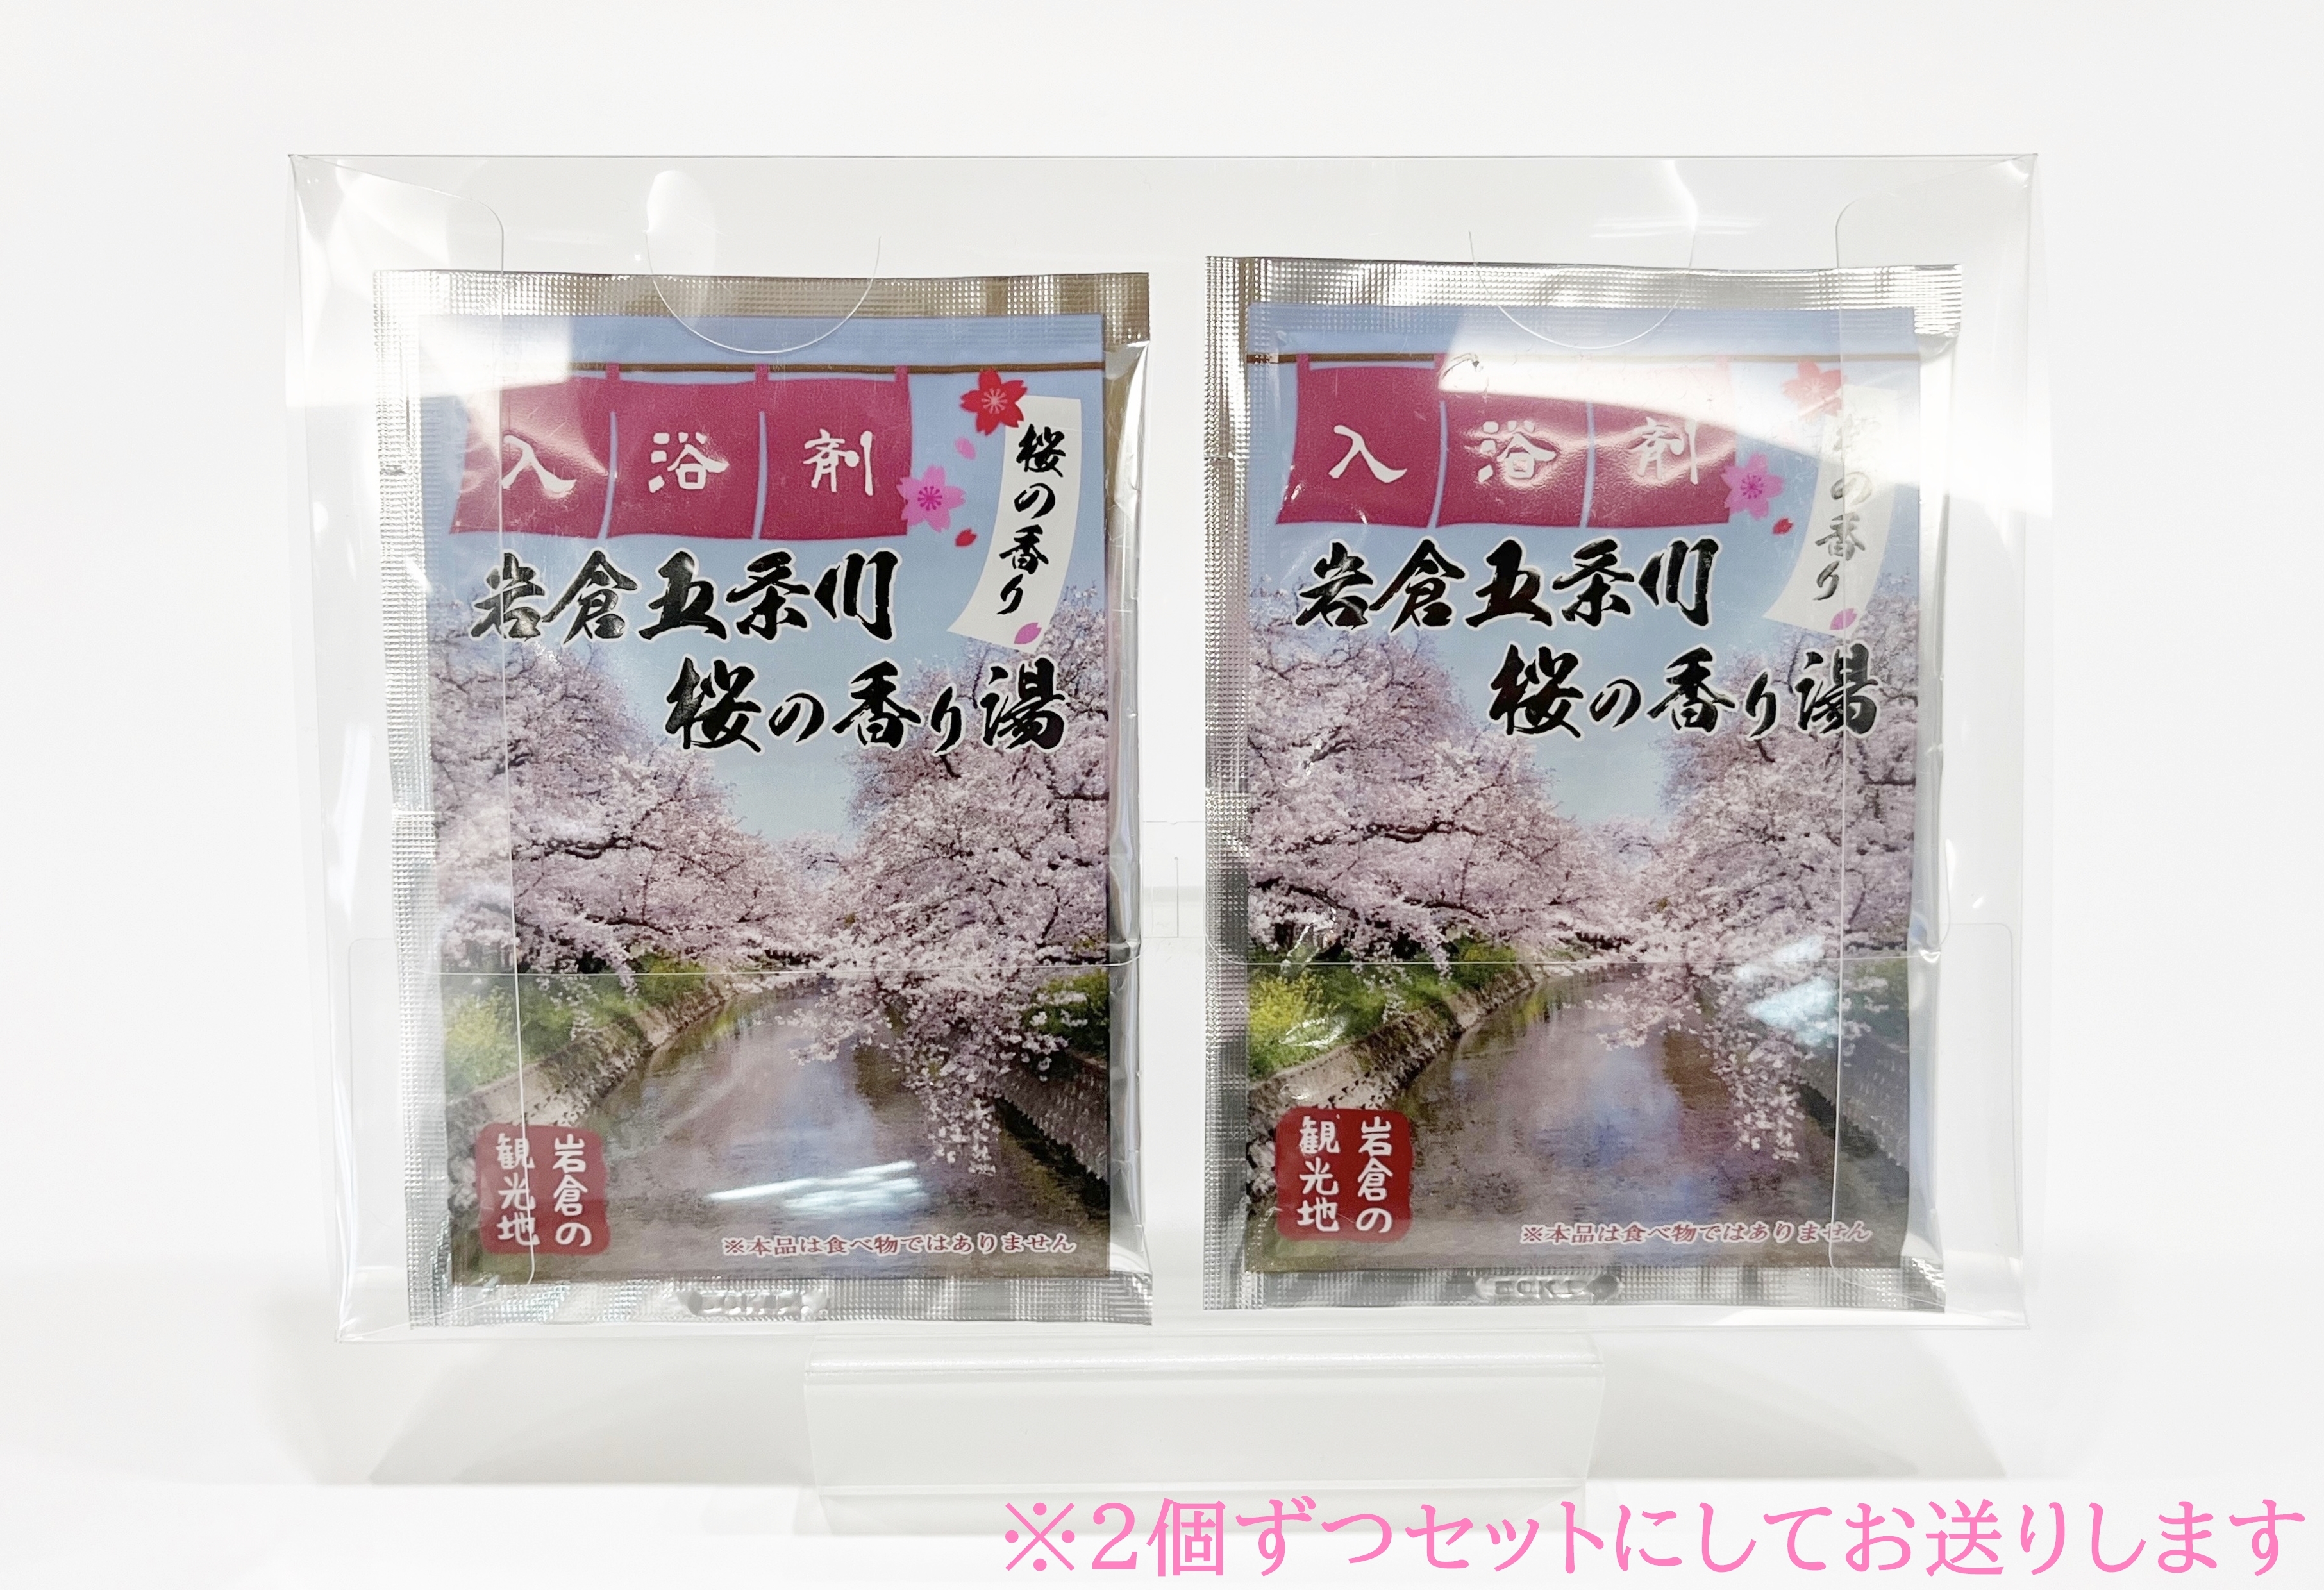 いわくら入浴剤「岩倉五条川 桜の香り湯」10個パック